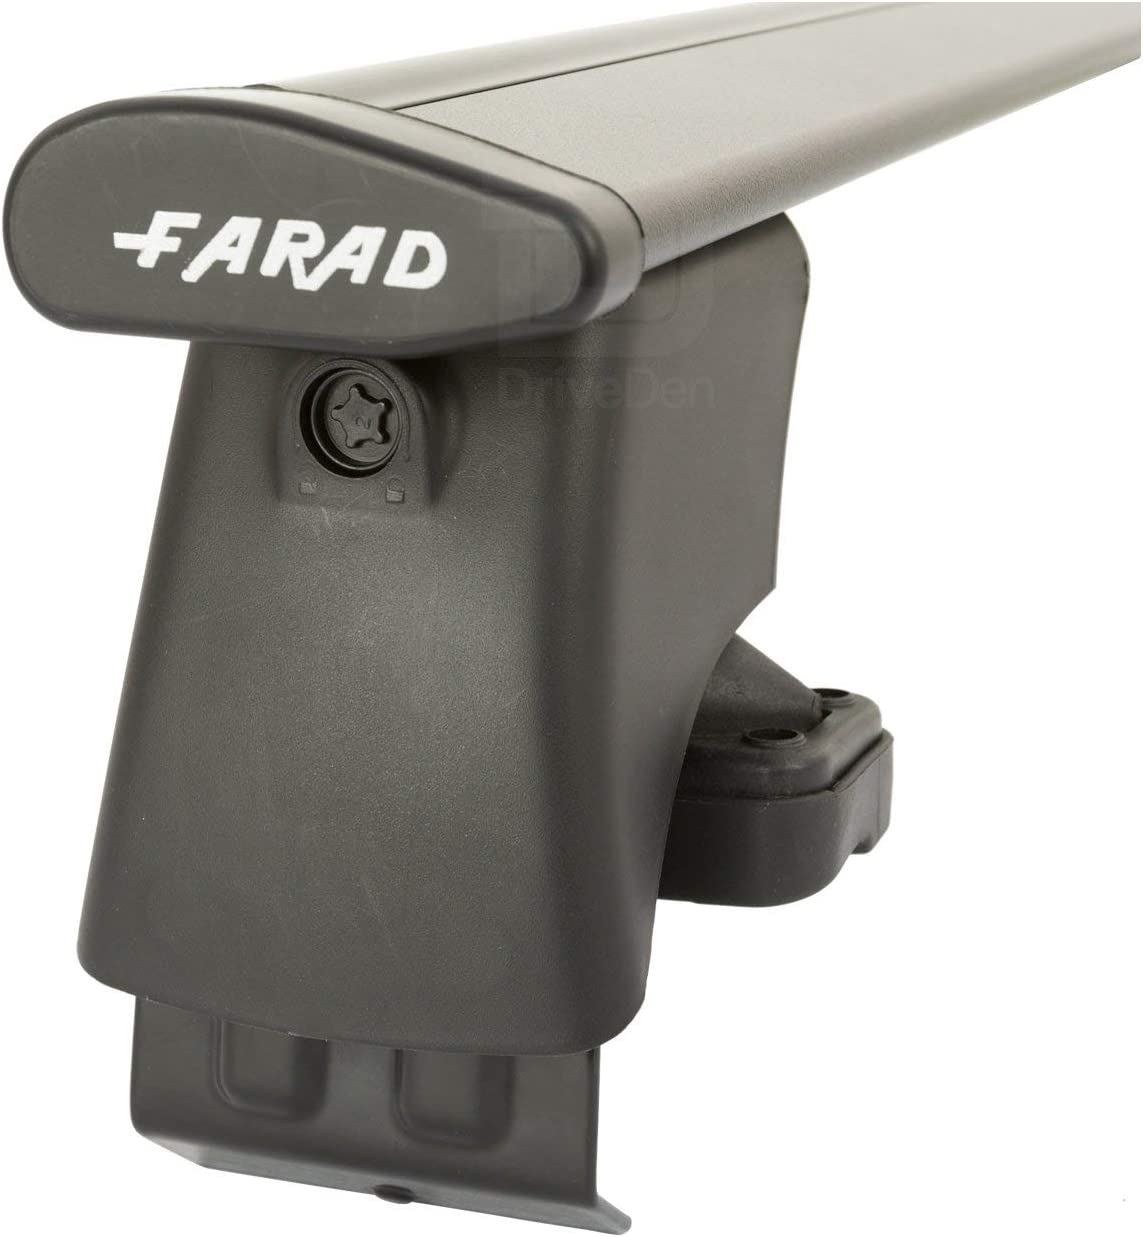 FARAD-Kit H2 per barre portatutto - Kia Picanto 2011-2017 (senza corrimano)